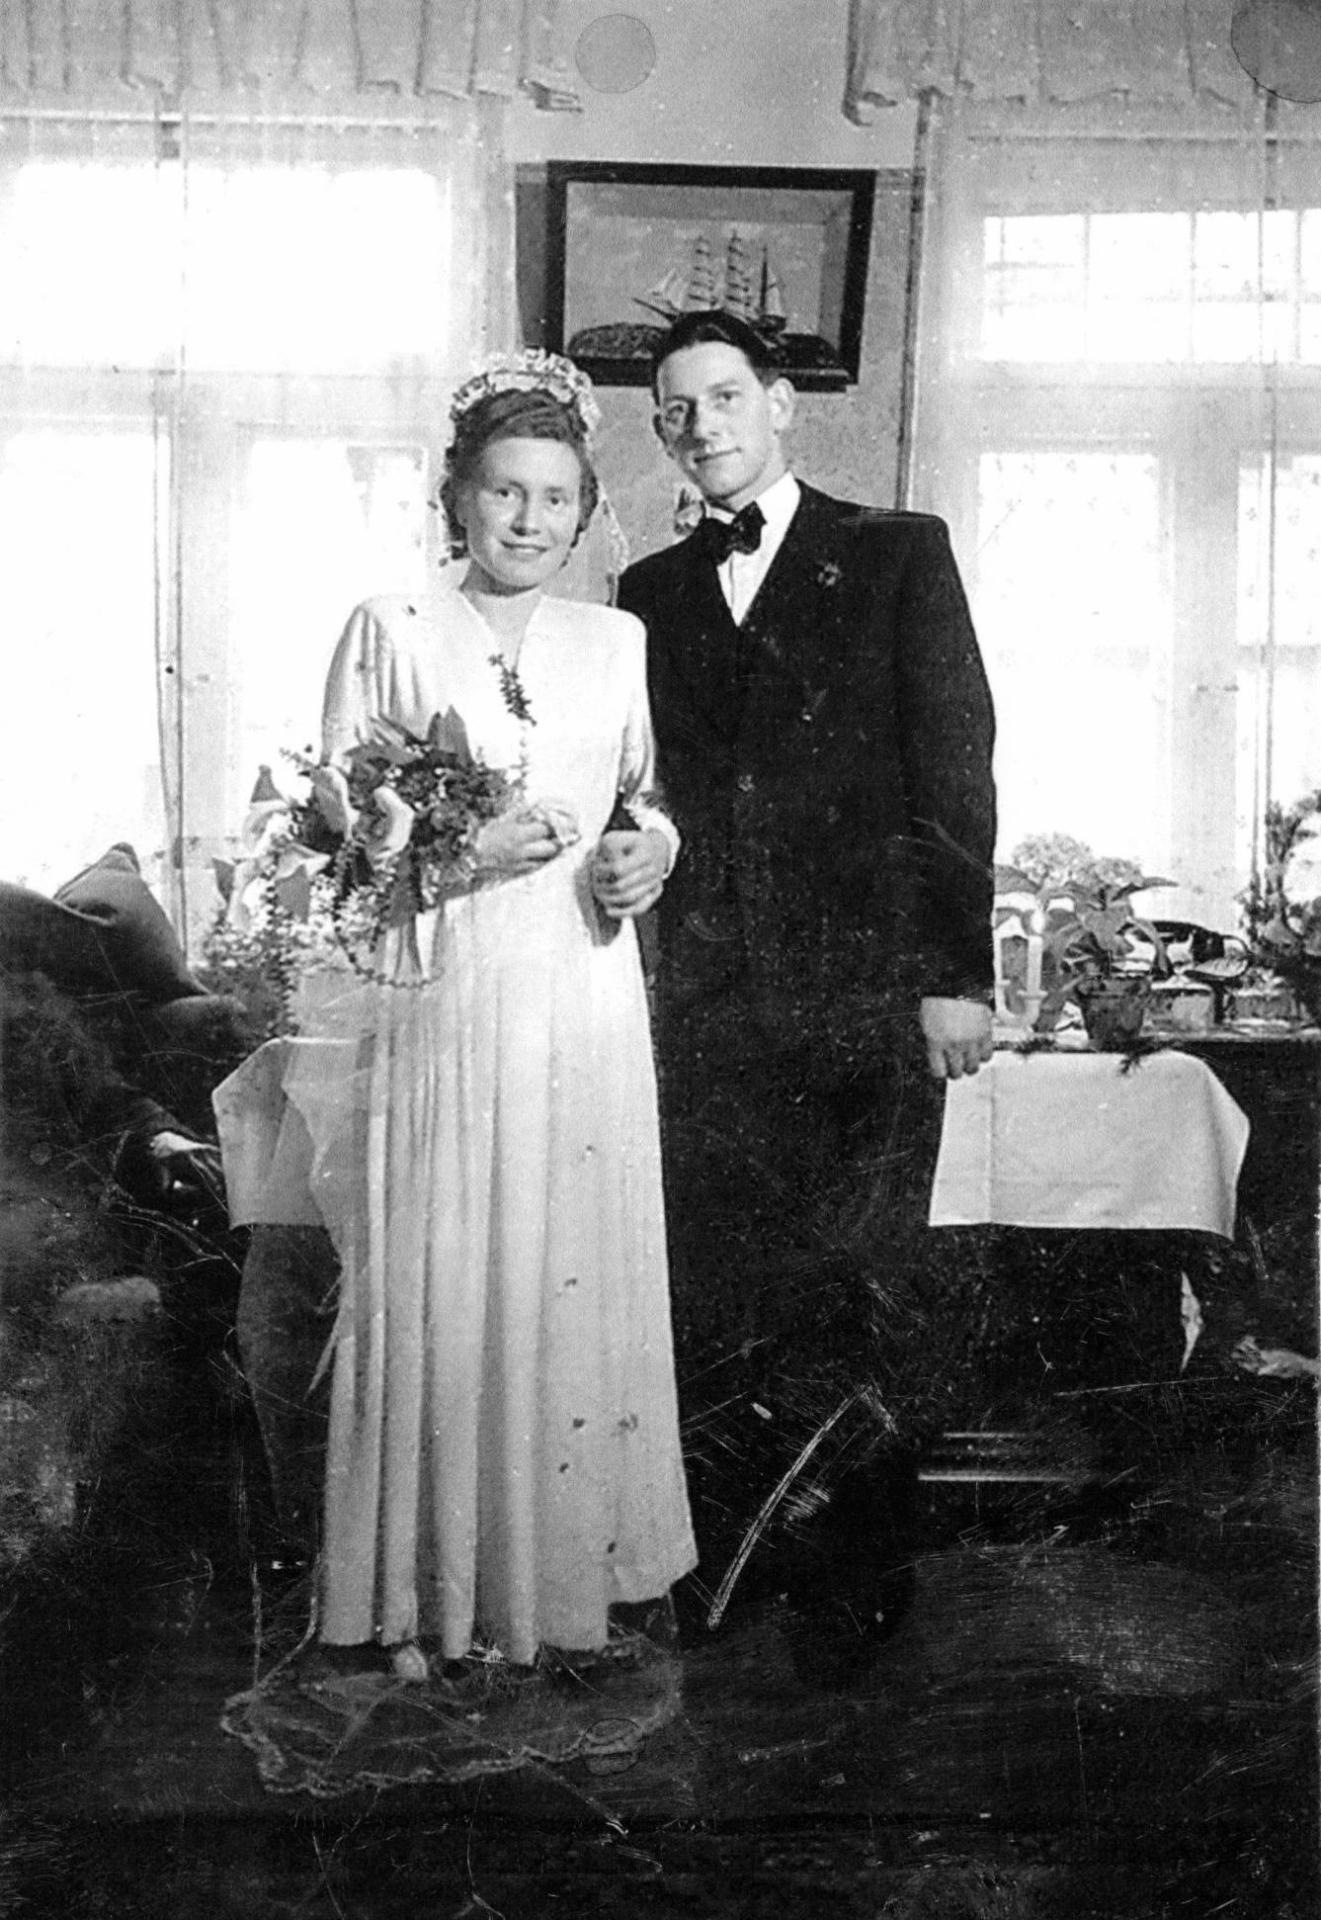 Hochzeit Edith Kriszausky und Wilhelm Voss am 31. März 1951